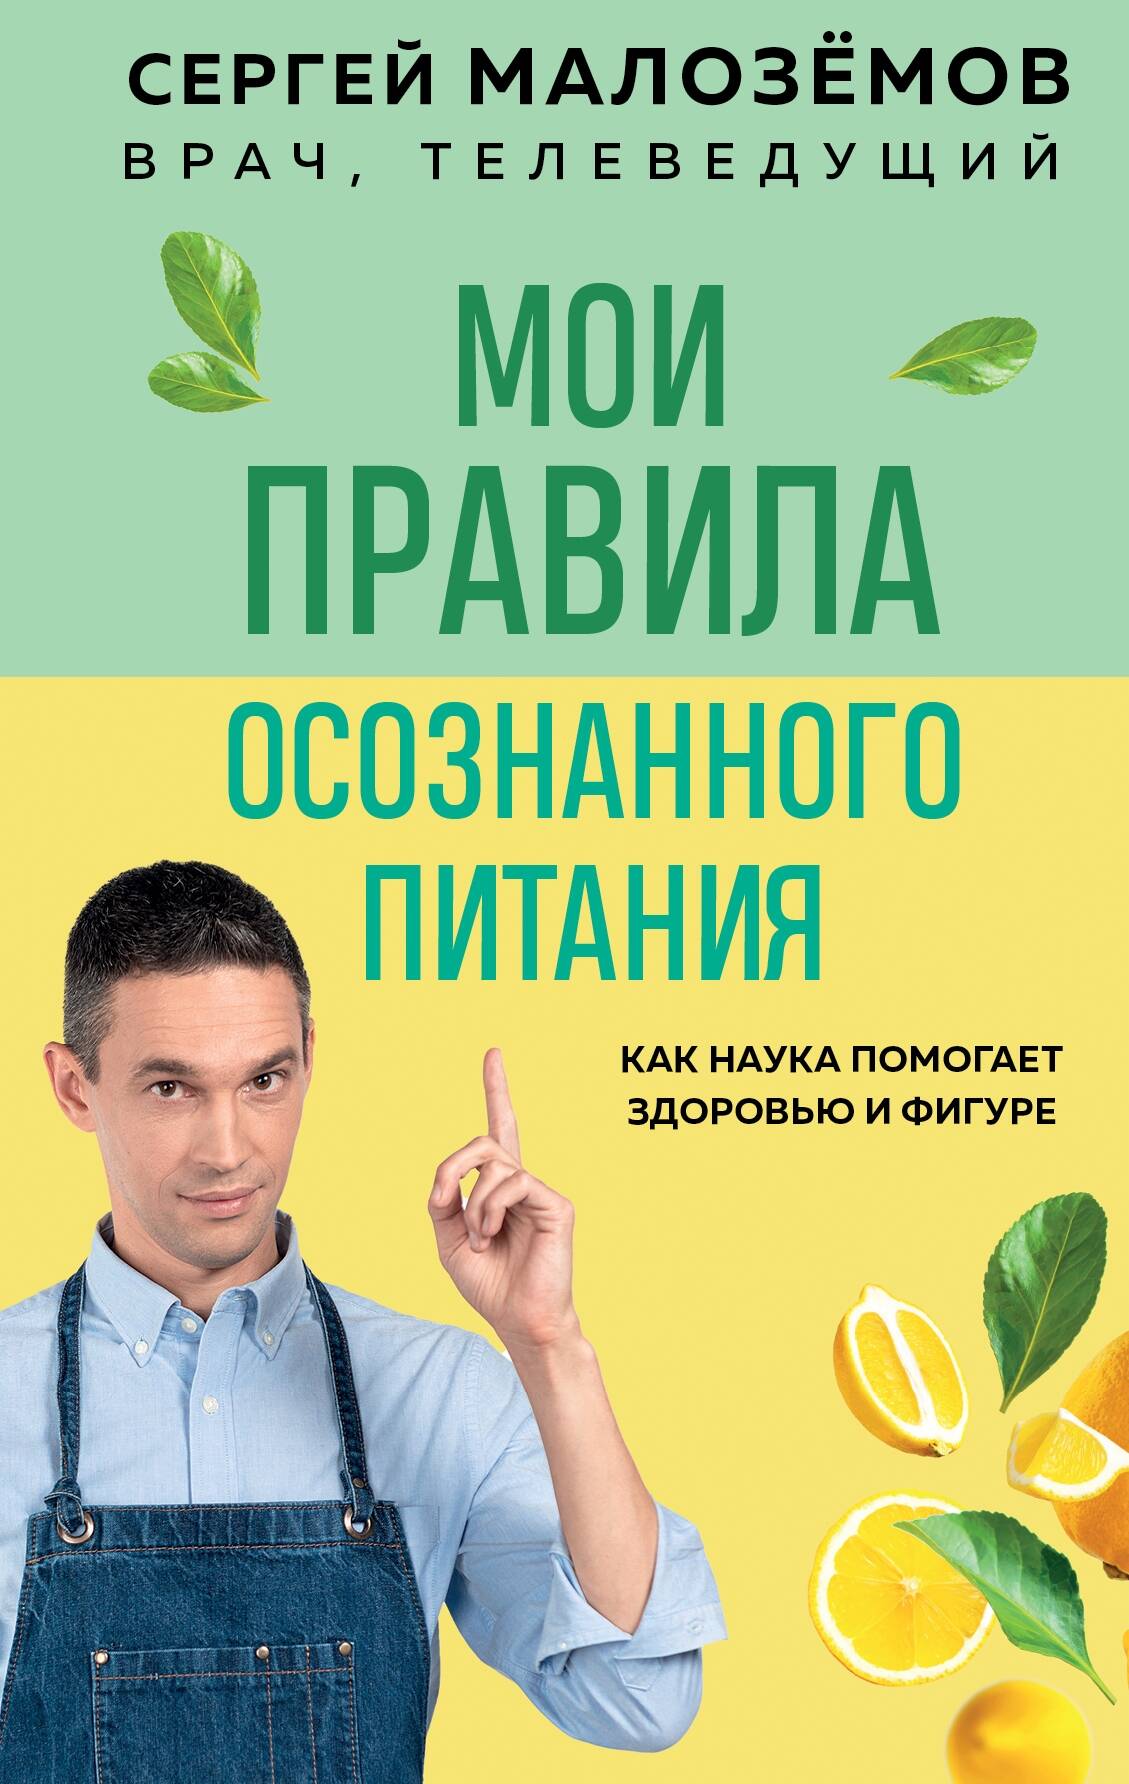 Малоземов Сергей Александрович Мои правила осознанного питания. Как наука помогает здоровью и фигуре